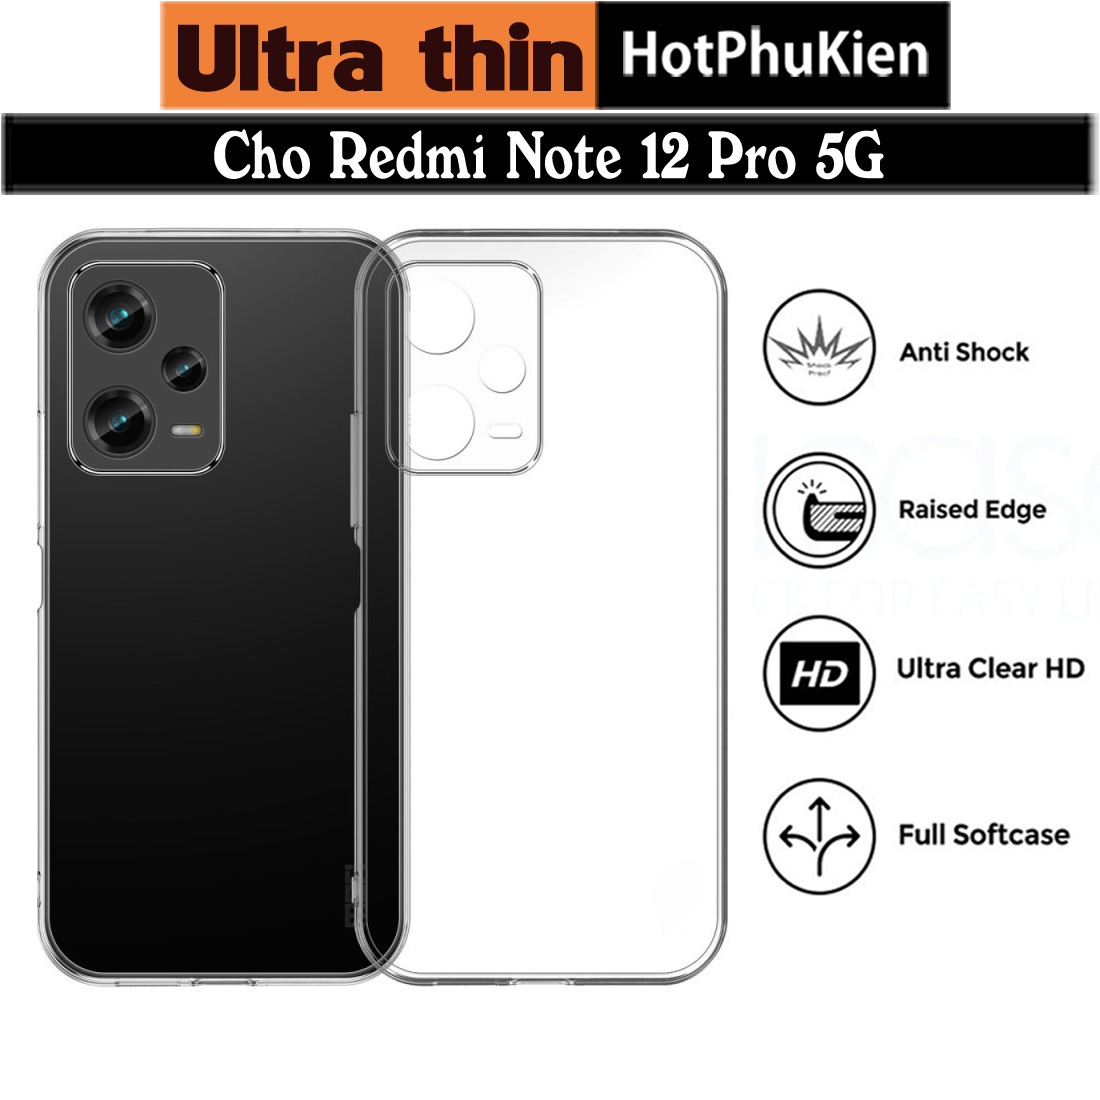 Ốp lưng silicon dẻo cho Redmi Note 12 Pro 5G hiệu Ultra Thin trong suốt mỏng 0.6mm độ trong tuyệt đối chống trầy xước - Hàng nhập khẩu